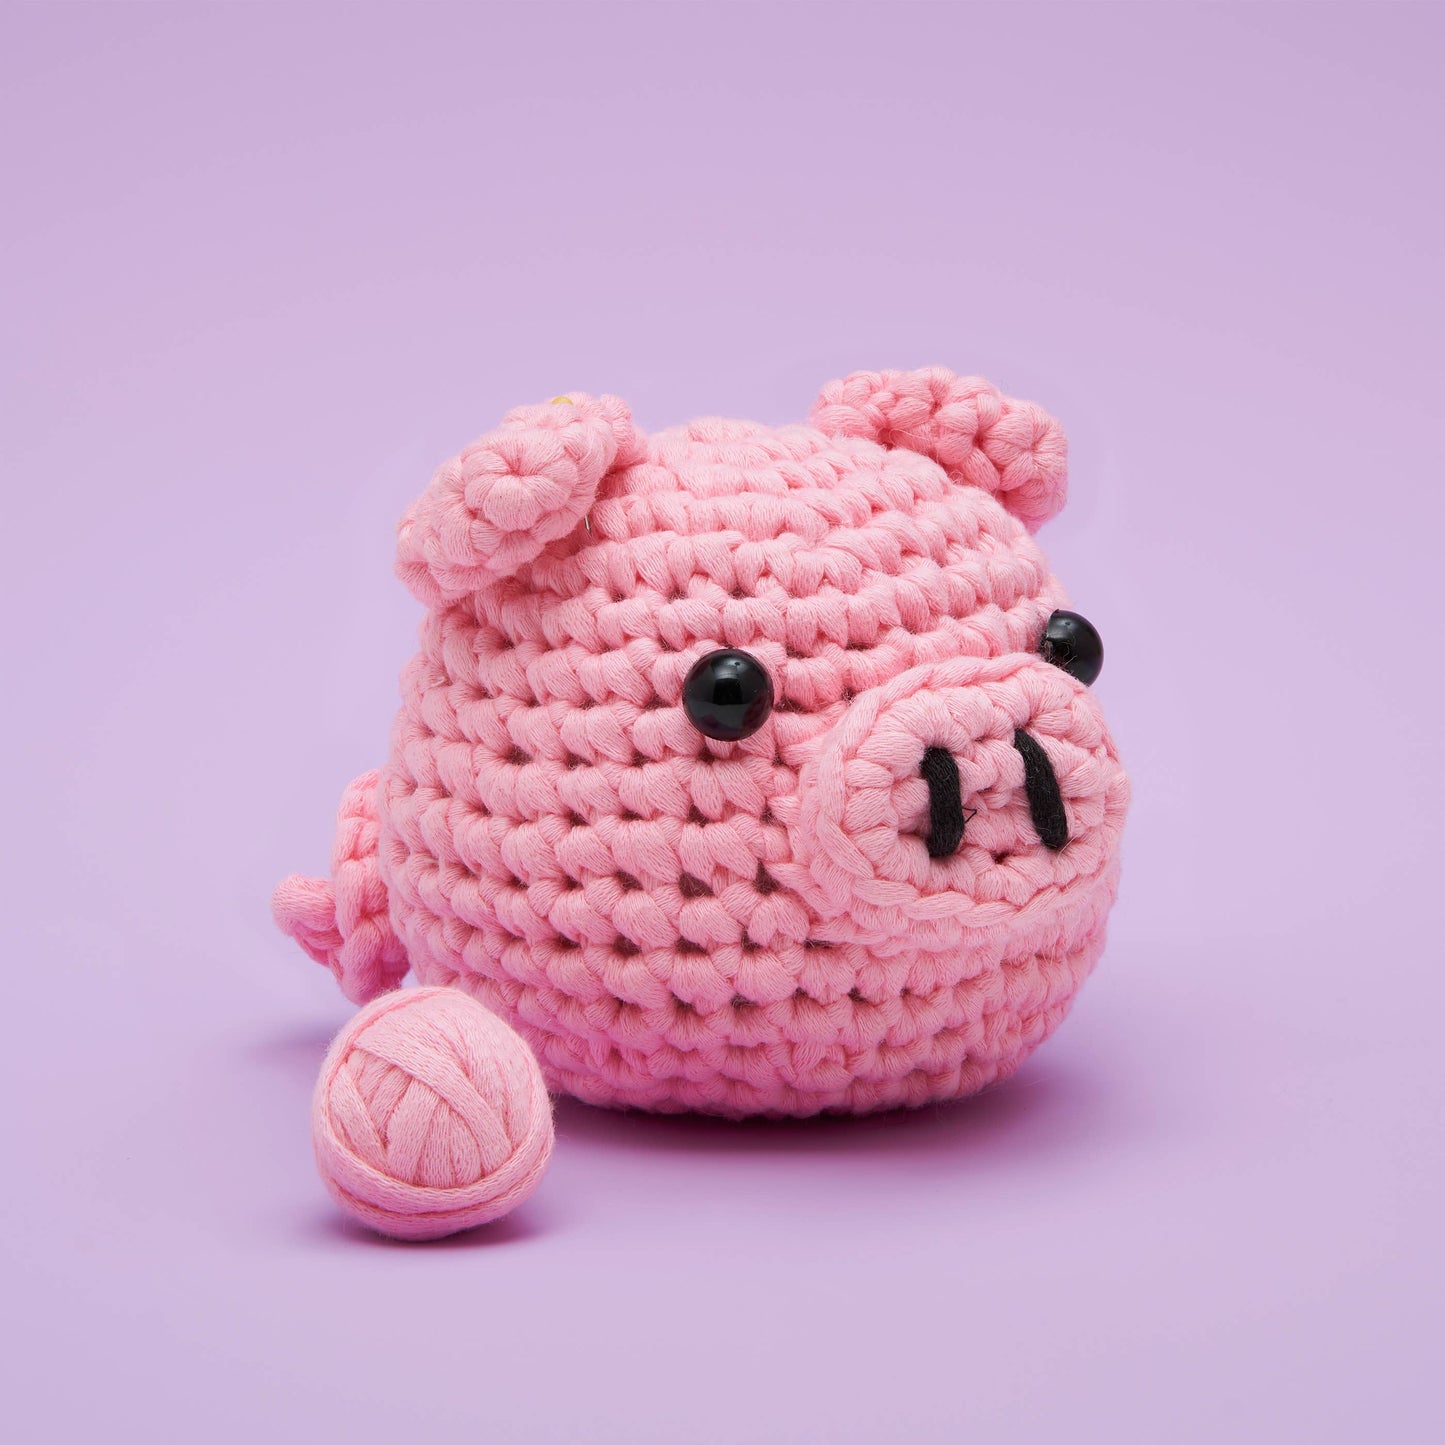 Woobles Bacon the Pig Beginner Crochet Kit